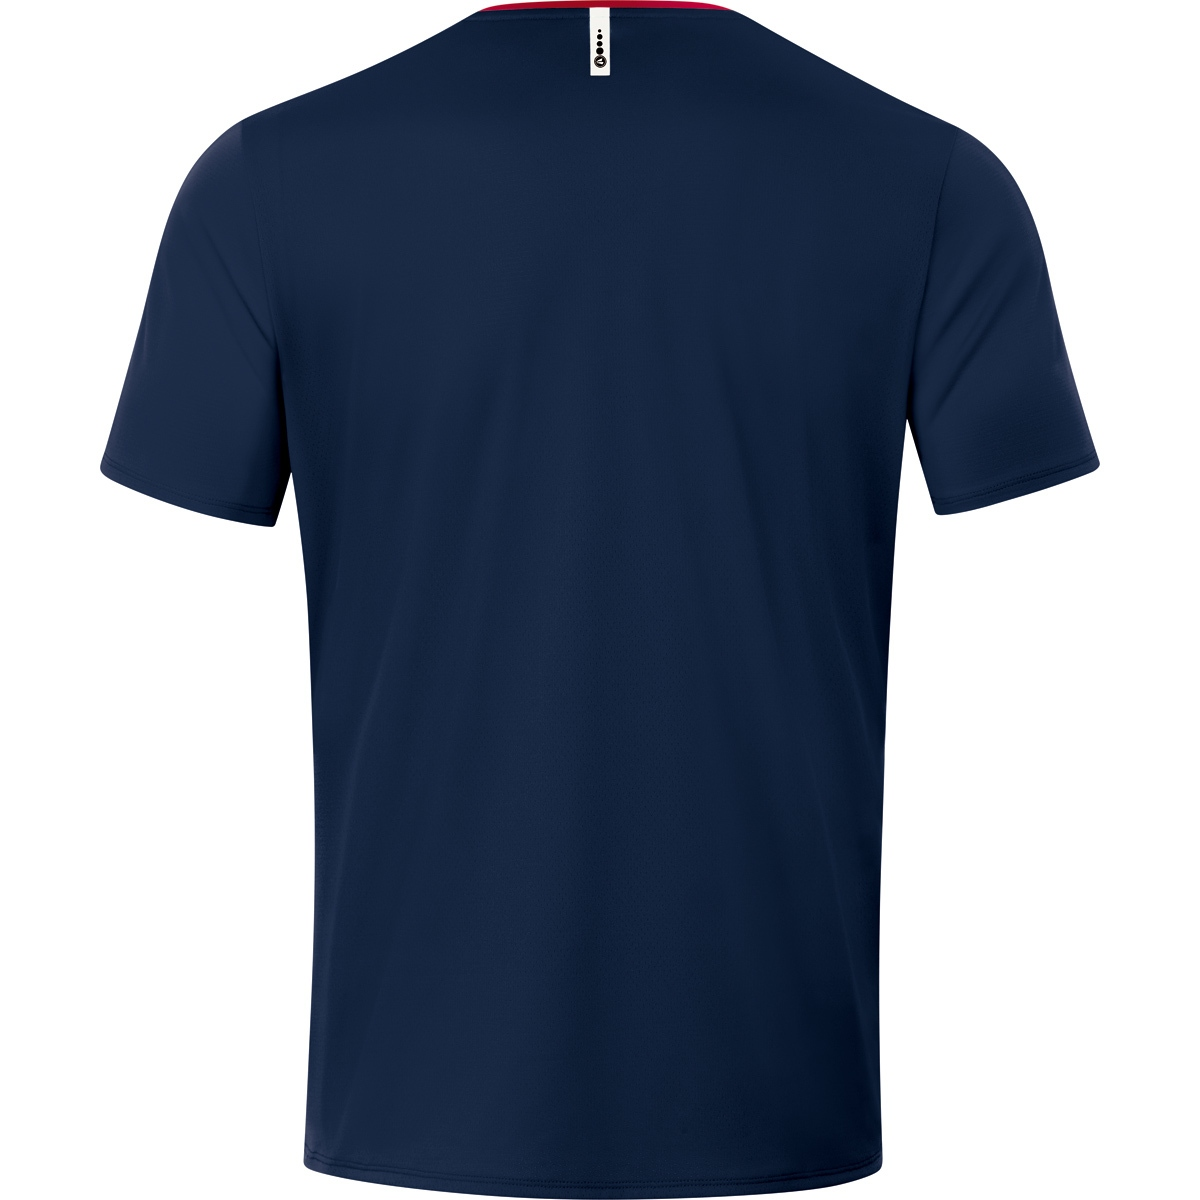 Gr. marine/chili T-Shirt L, rot, 6120 2.0 JAKO Champ Herren,